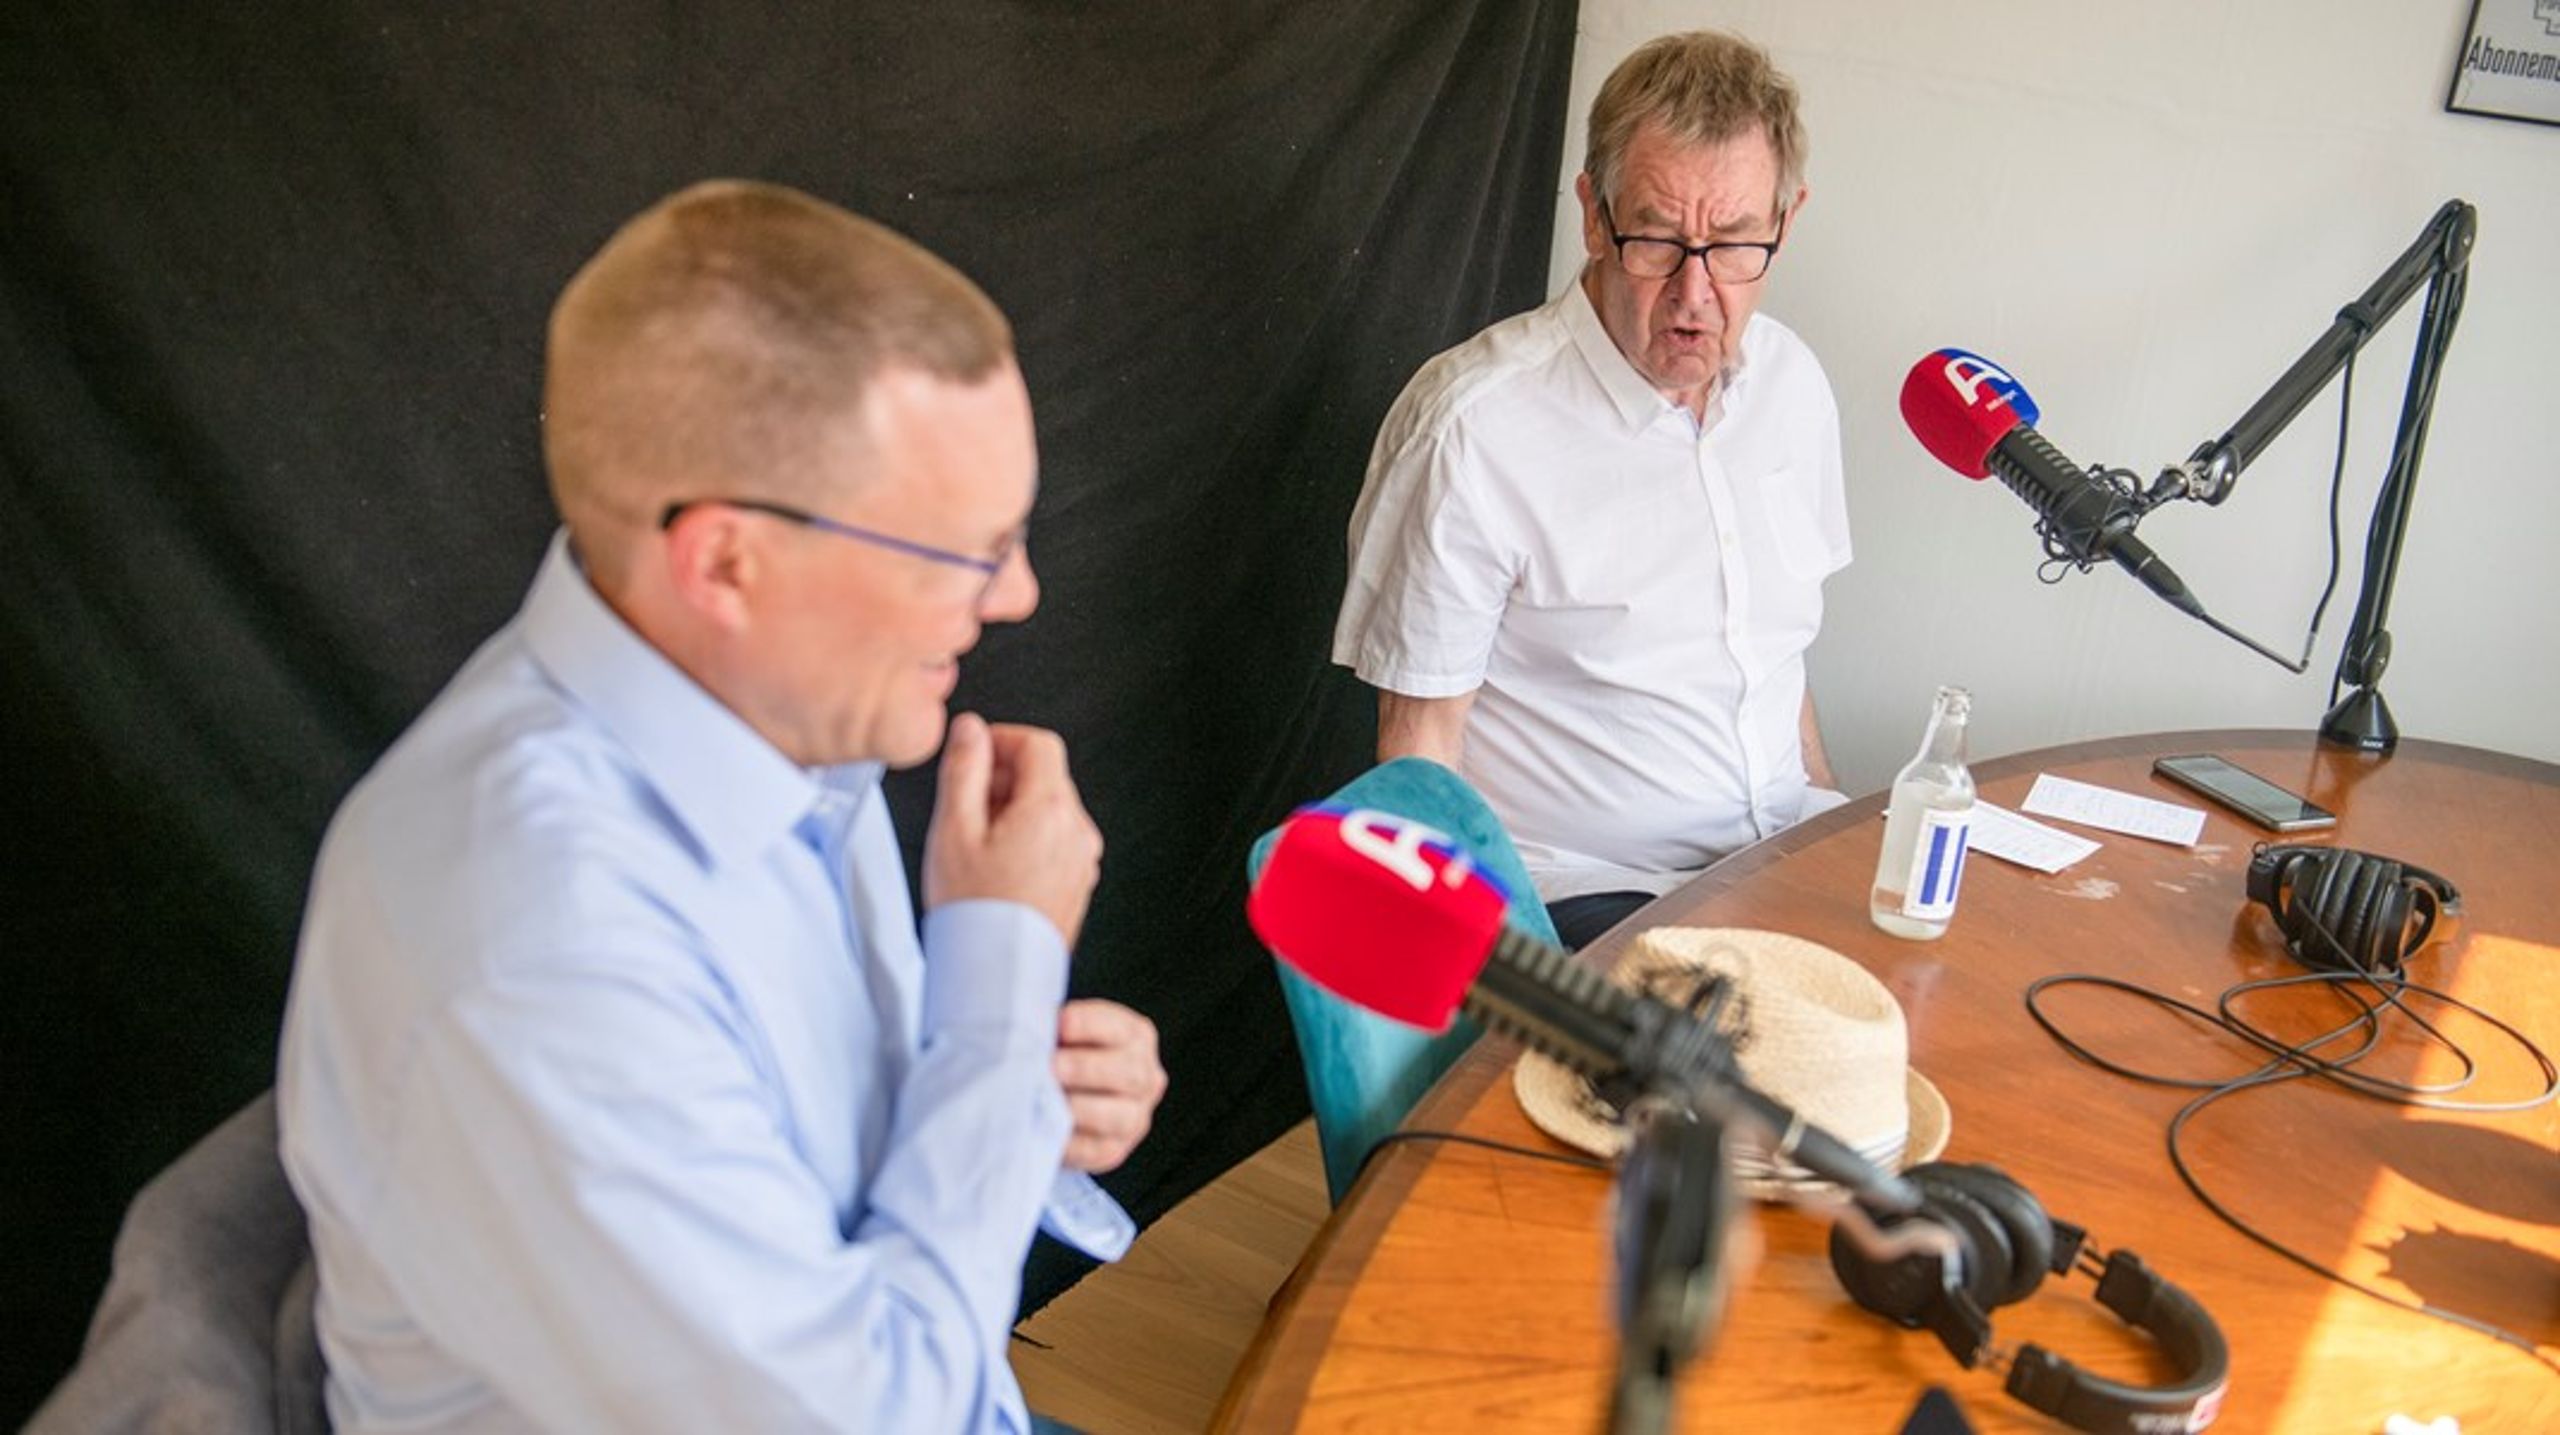 Tidligere statsminister, Poul Nyrup Rasmussen og Altingets chefredaktør, Jakob Nielsen i Altingets podcaststudie på årets Folkemøde på Bornholm.